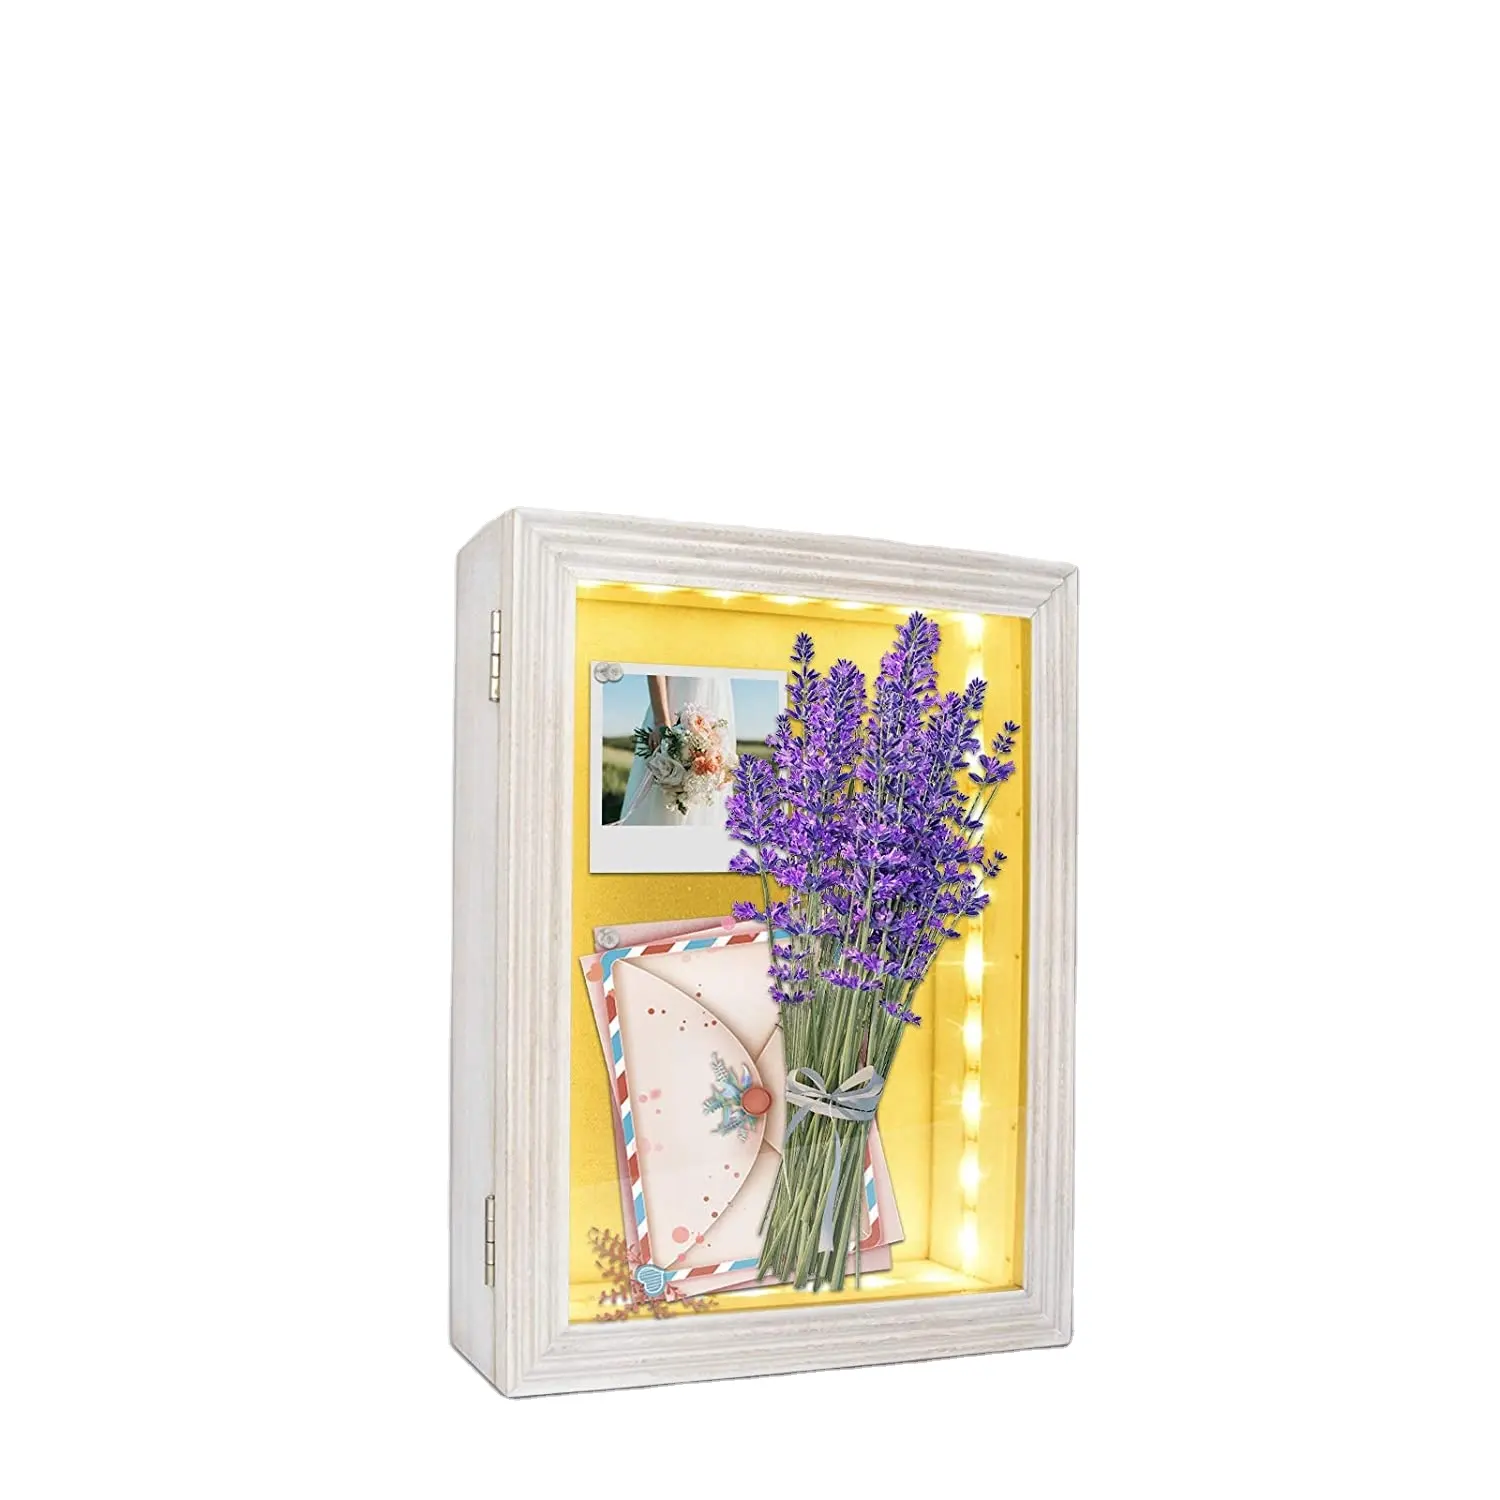 Rustik ülke tarzı LED 8x10 beyaz ahşap fotoğraf toplu satın dekoratif bellek mıknatıs büyük ışıklı gölge kutu çerçevesi ile çiçekler